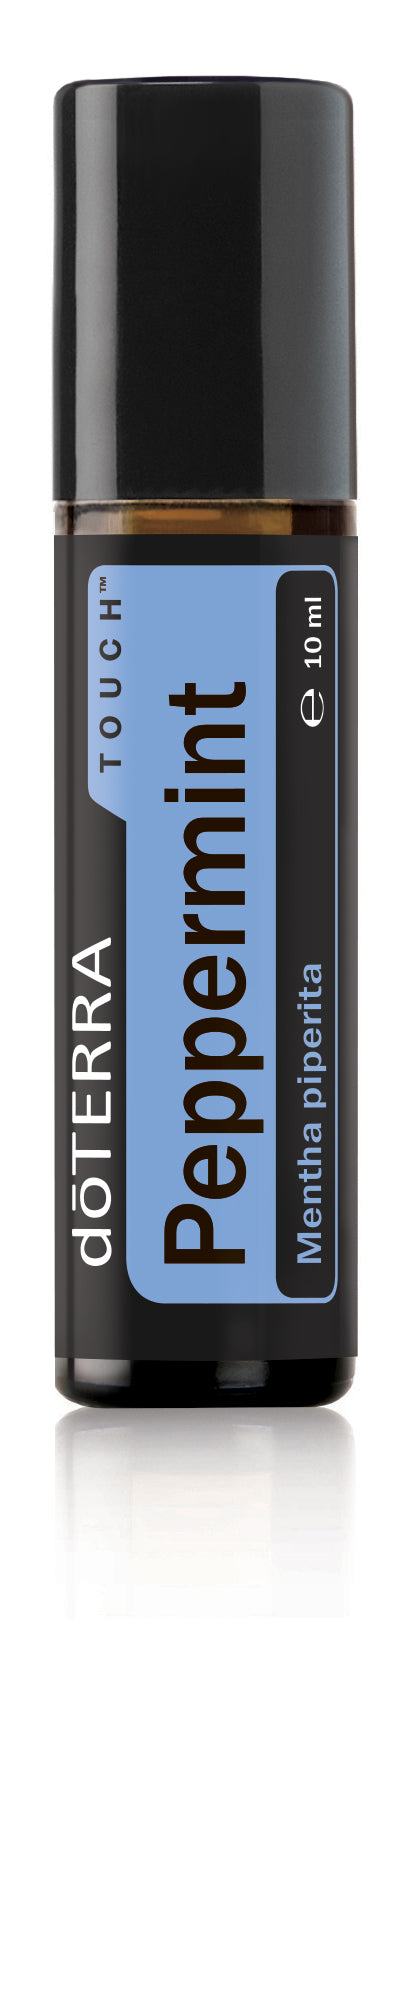 Peppermint Touch - Mentha piperita - doTERRA